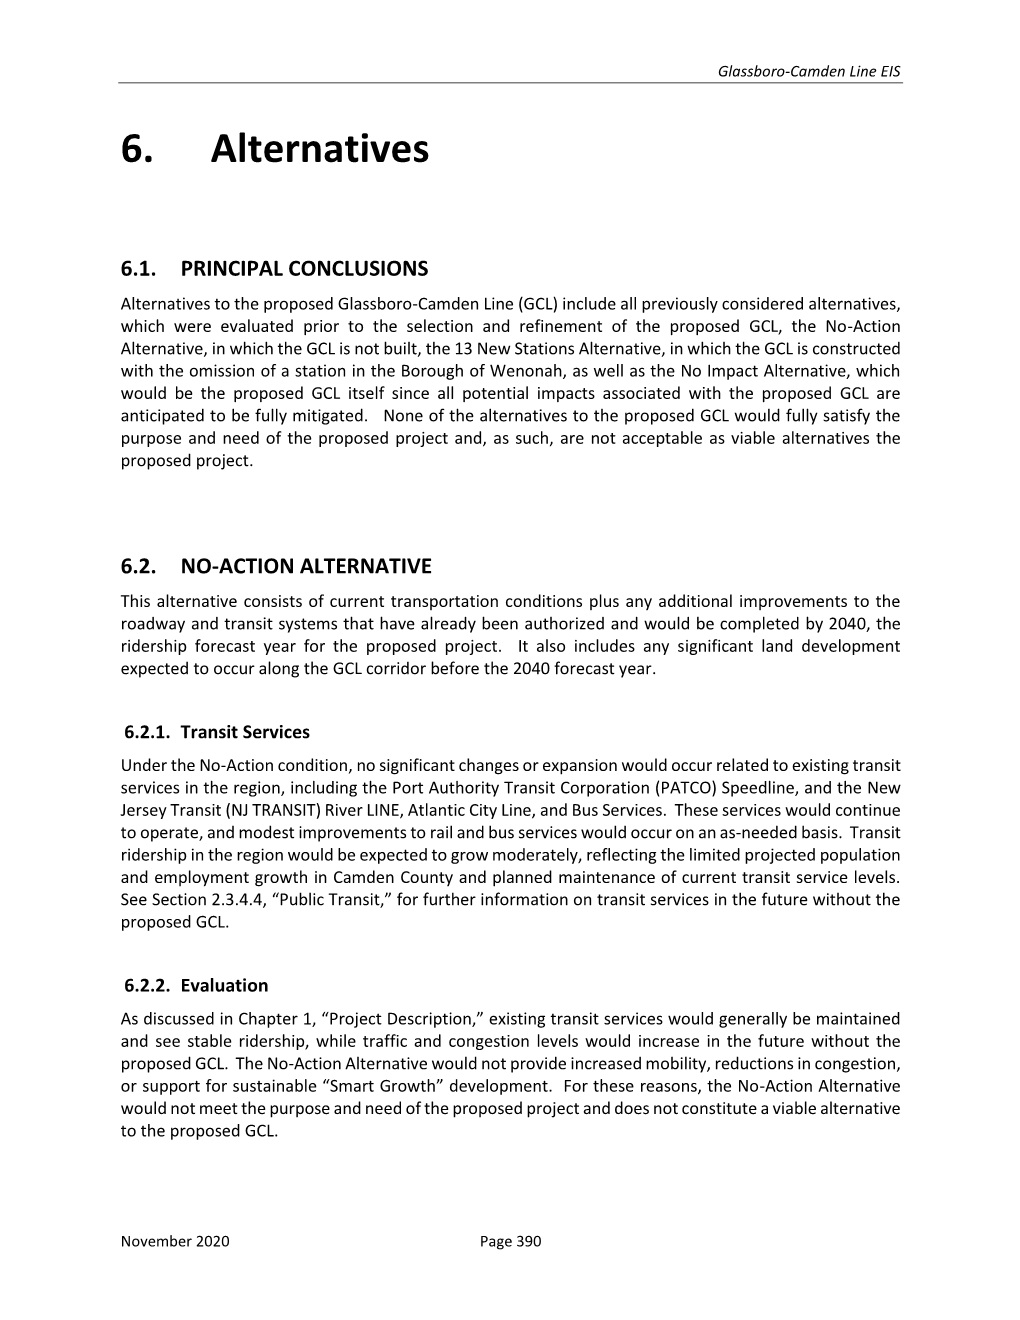 6. Alternatives